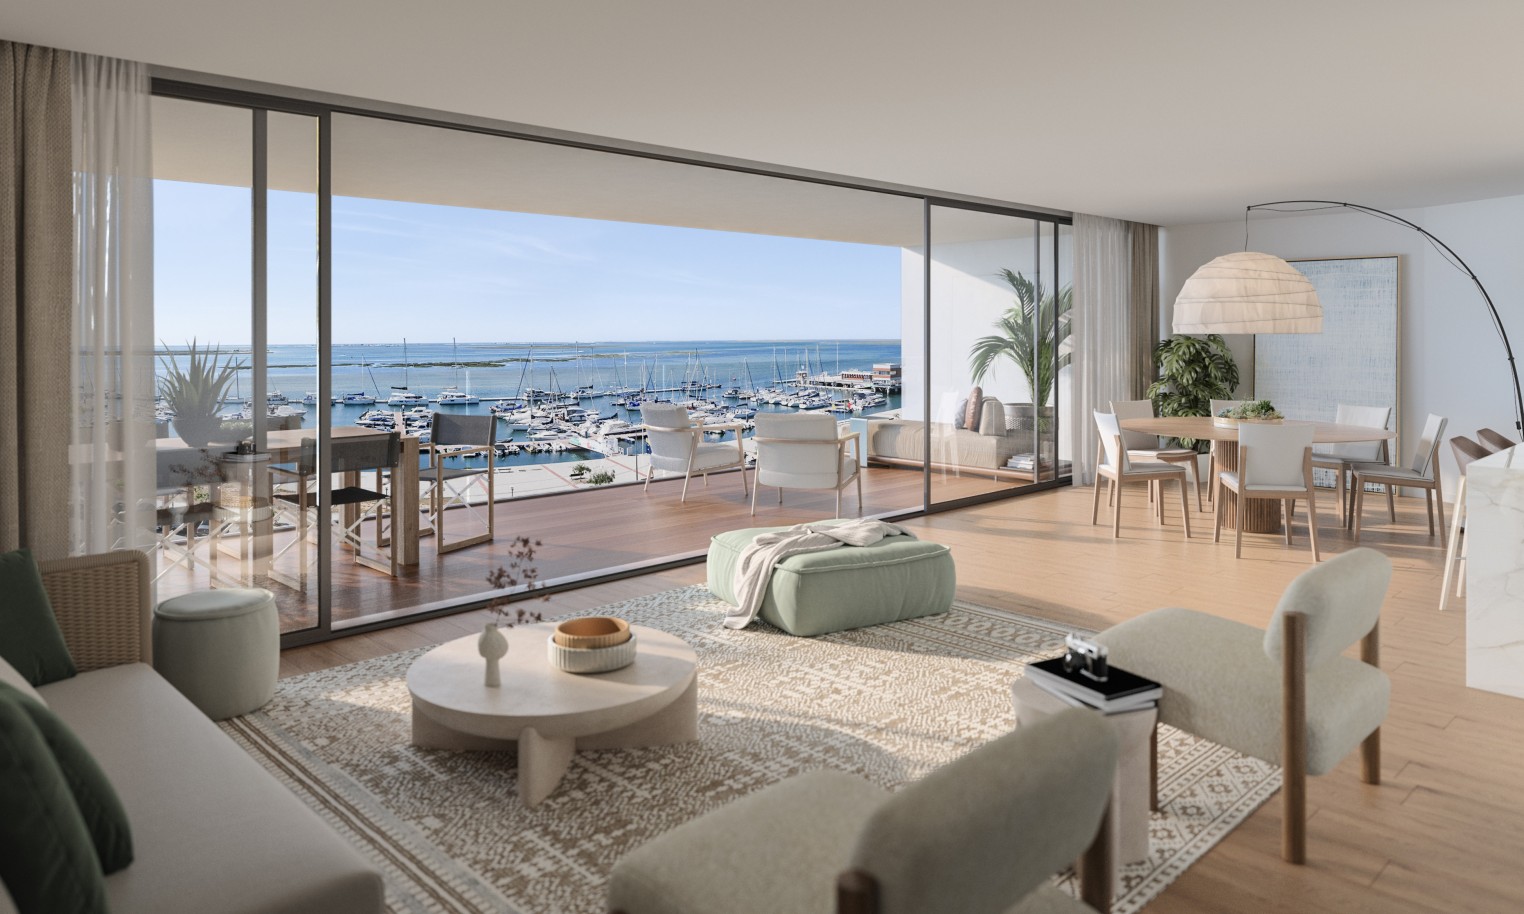 Pisos nuevos con vistas al mar, 1, 2 y 3 dormitorios, en venta en Olhão, Algarve_244597